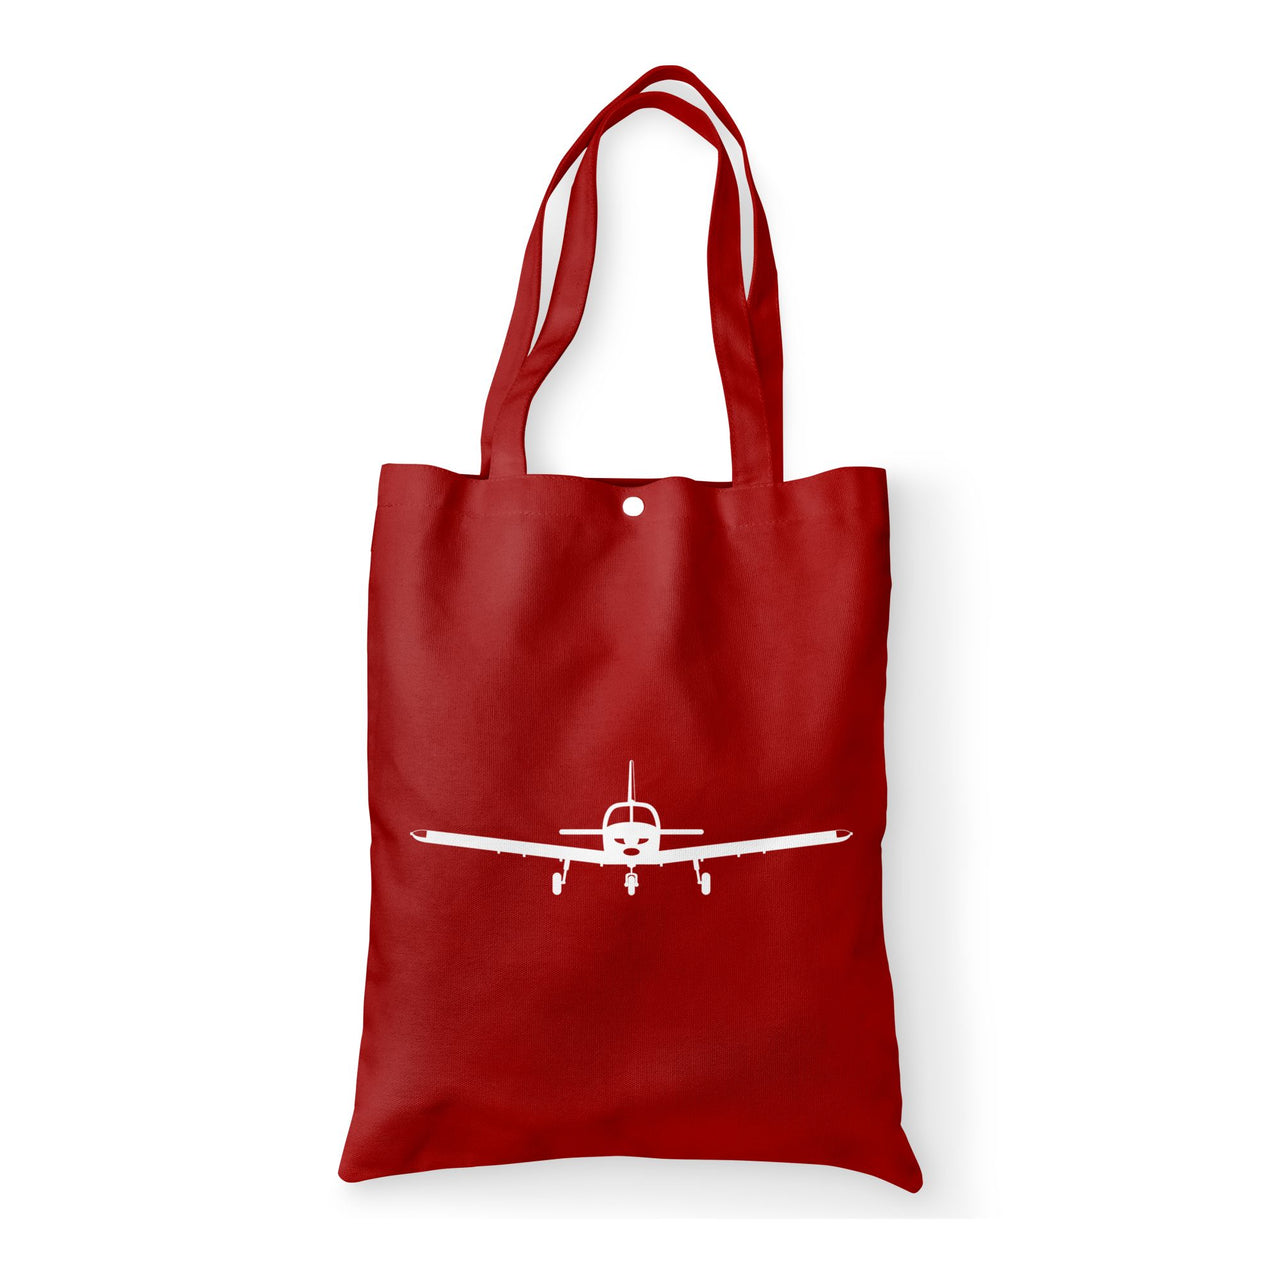 Piper PA28 Silhouette Plane Designed Tote Bags